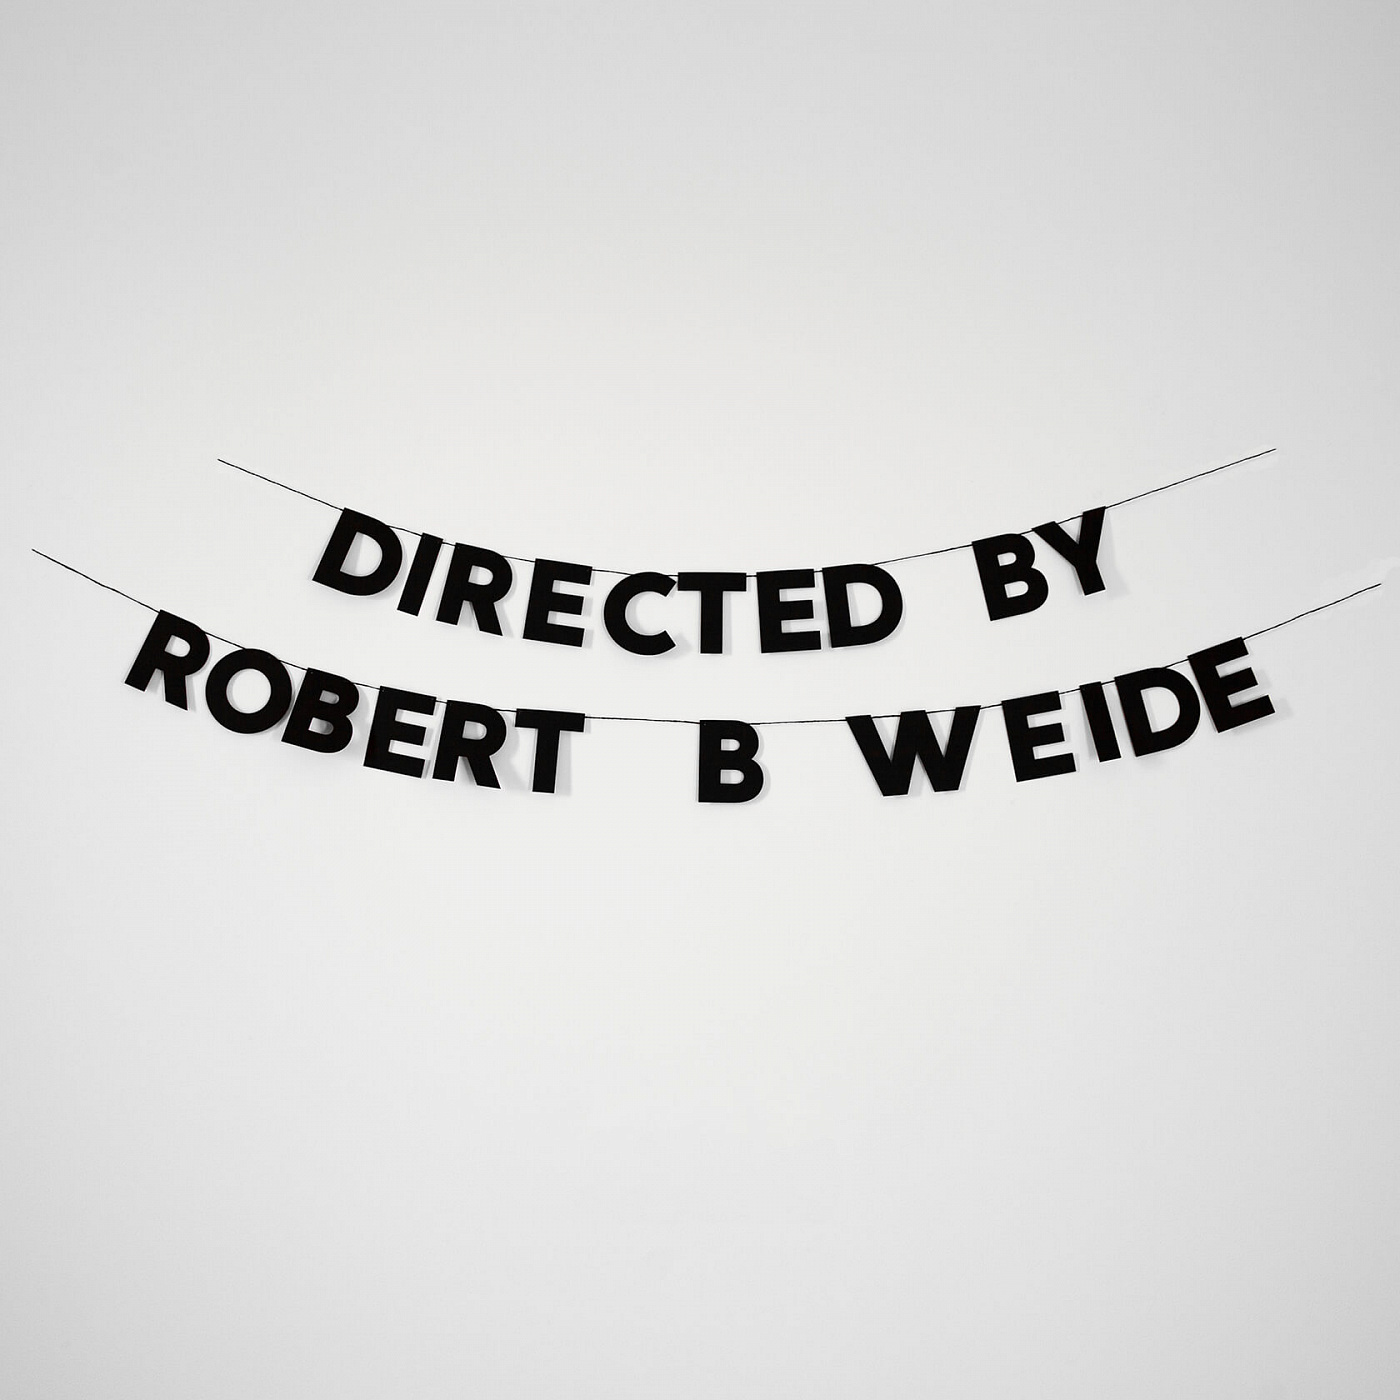  DIRECTED BY ROBERT B WEIDE